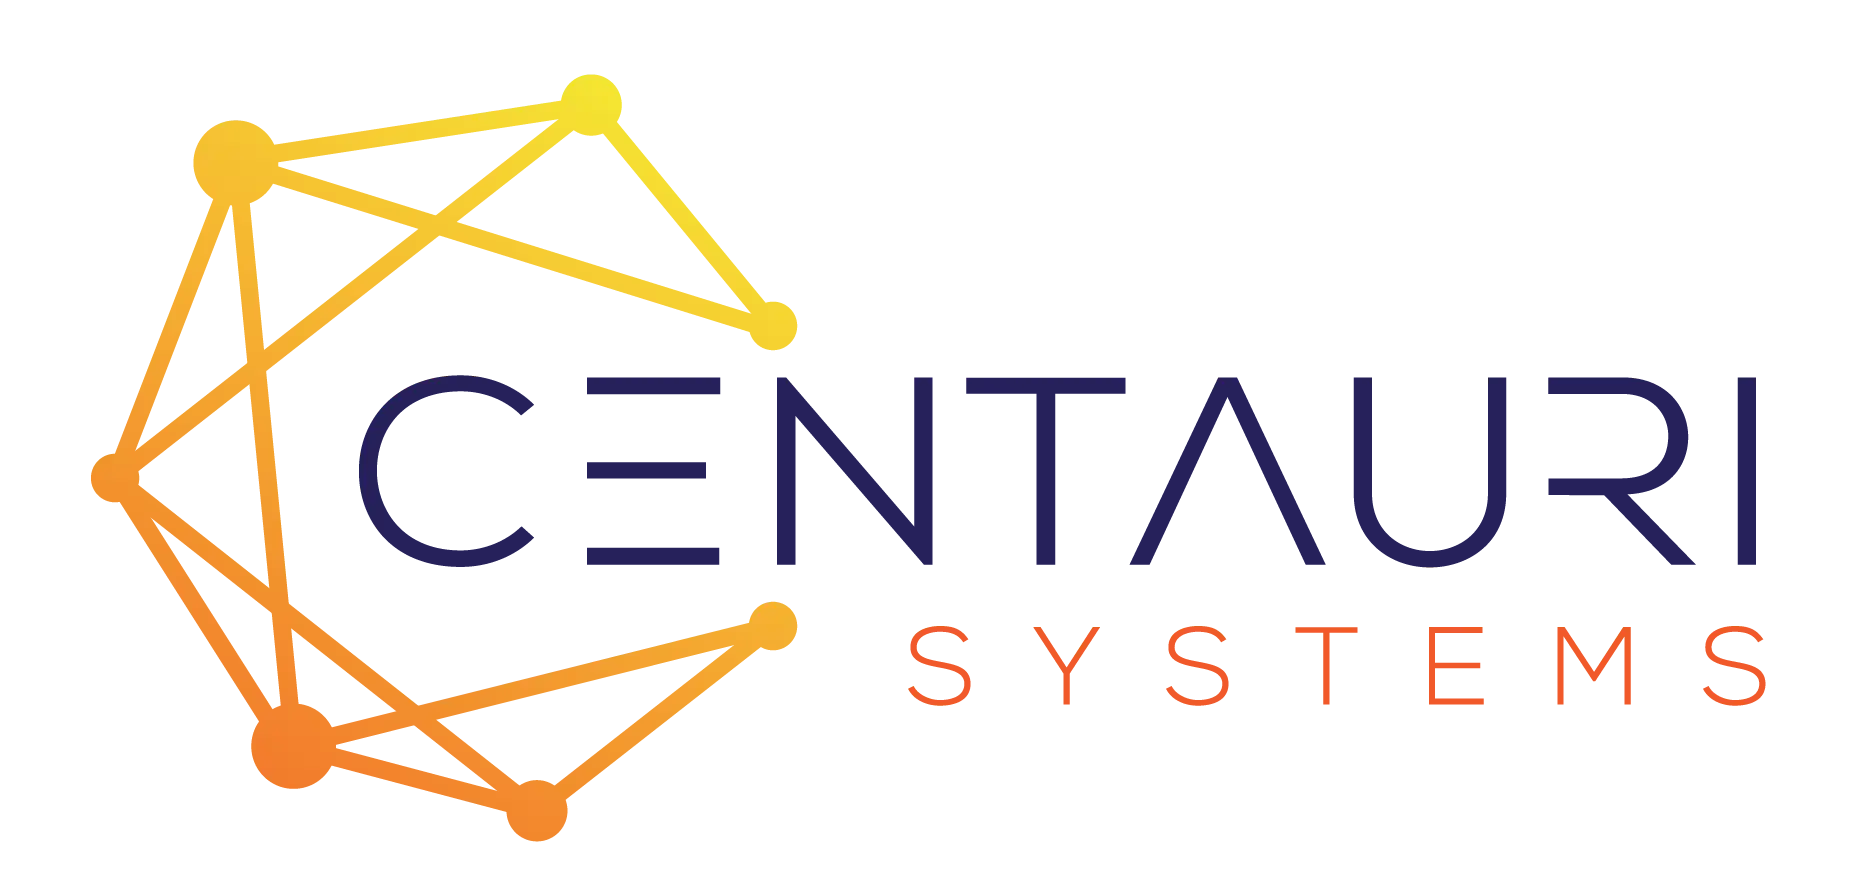 Centauri Systems LLC logo